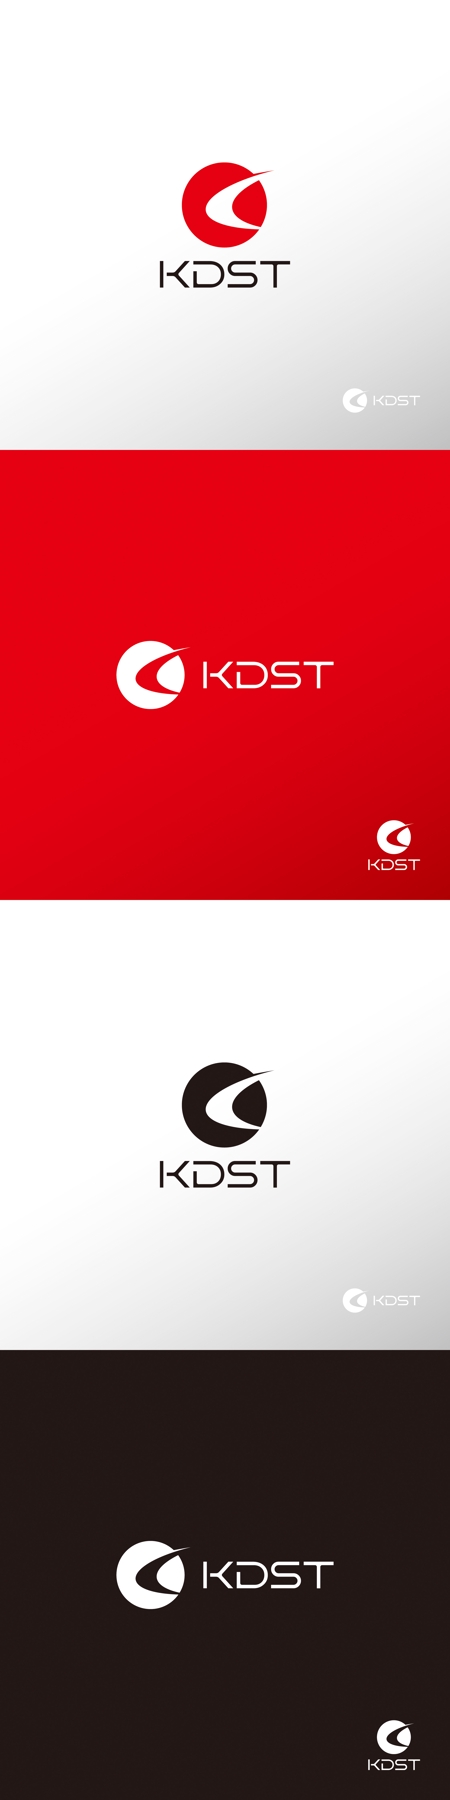 Doremidesignさんの事例 実績 提案 スポーツ用品ブランド Kdst のロゴ制作 はじめましてdore クラウドソーシング ランサーズ